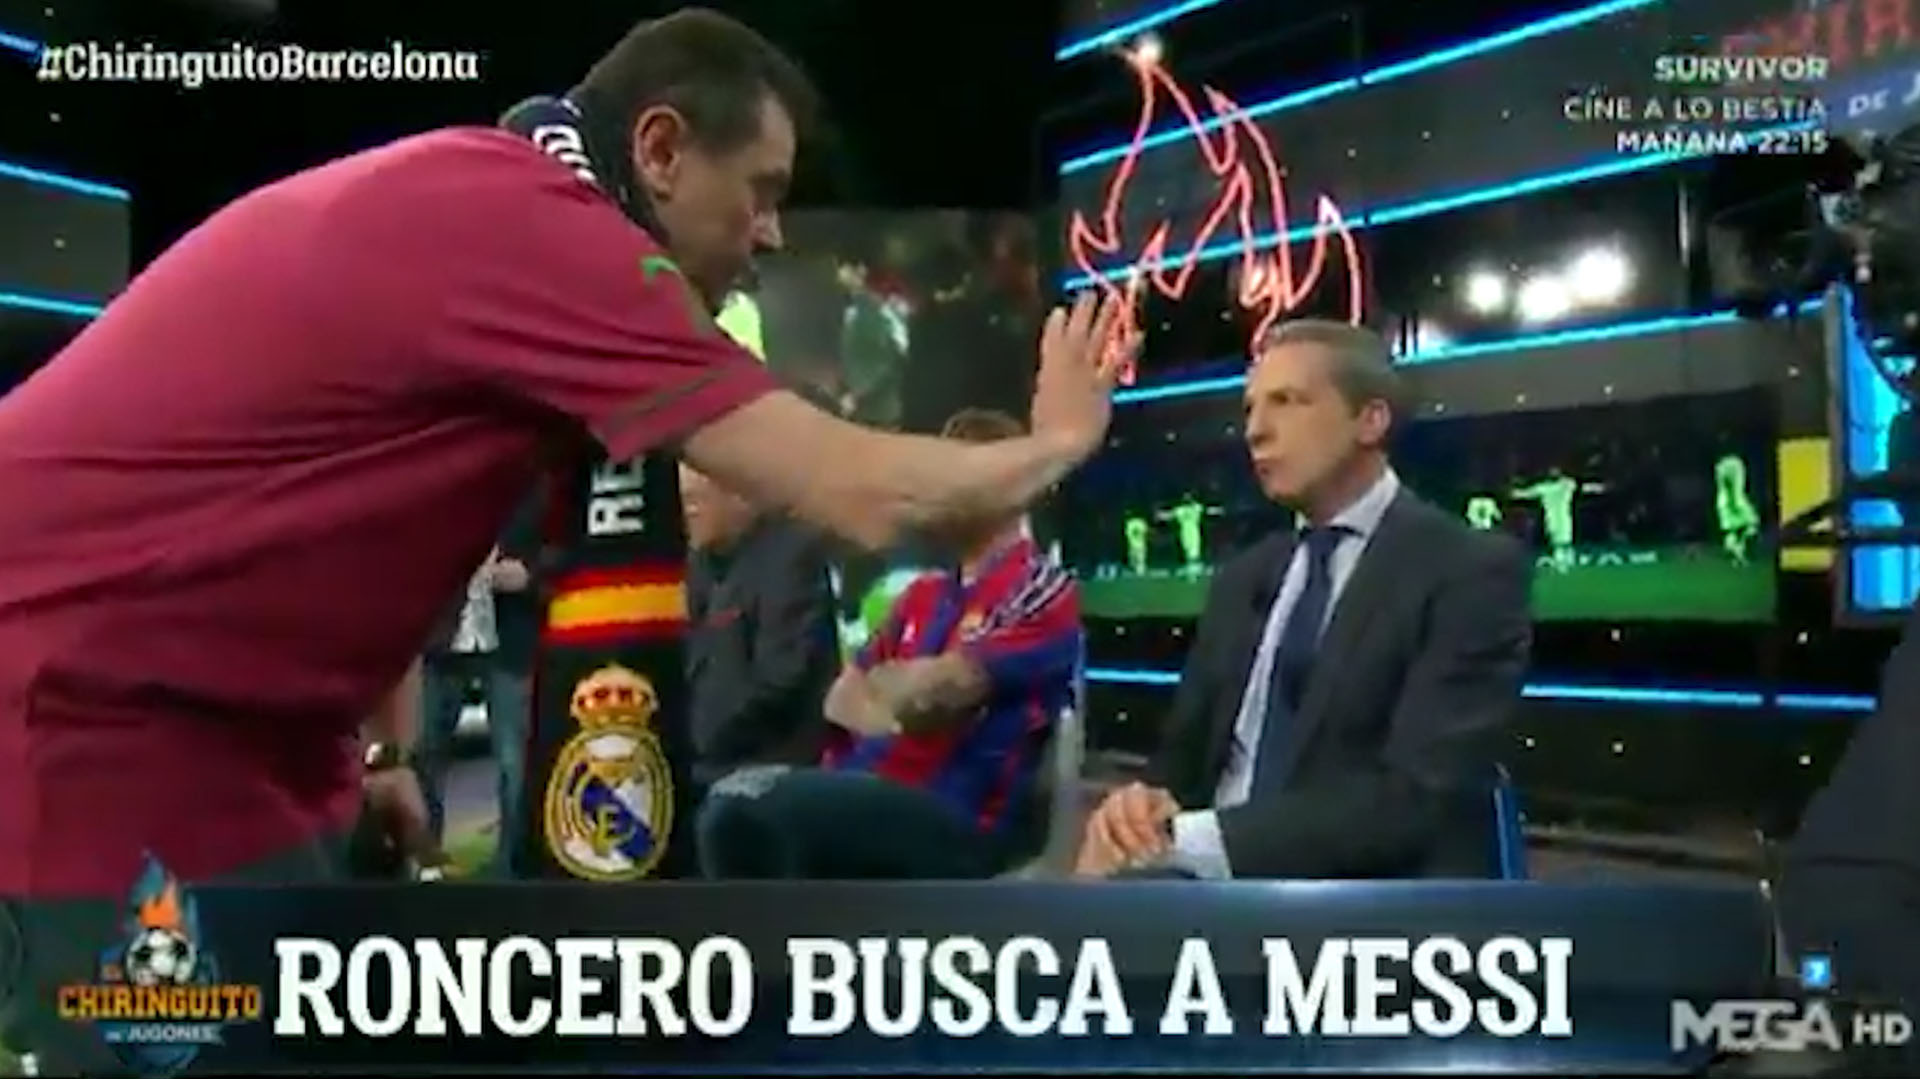 “Roncero busca a Messi”, así comenzó el programa el “Chiringuito TV” de la televisión española